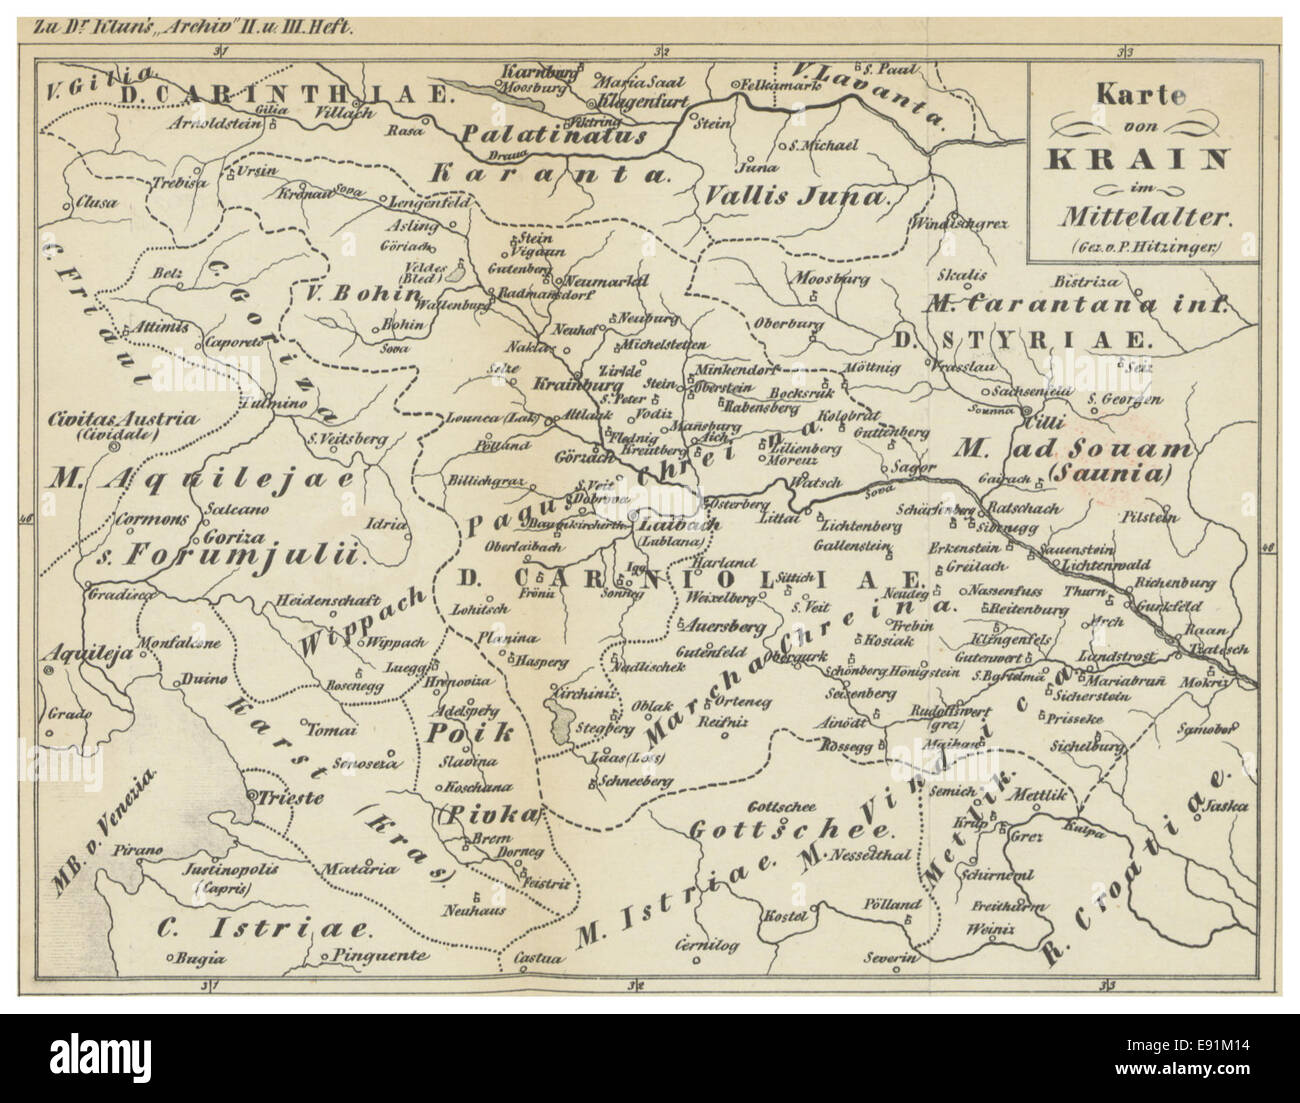 (1854) Karte von KRAIN im Mittelalter Stock Photo